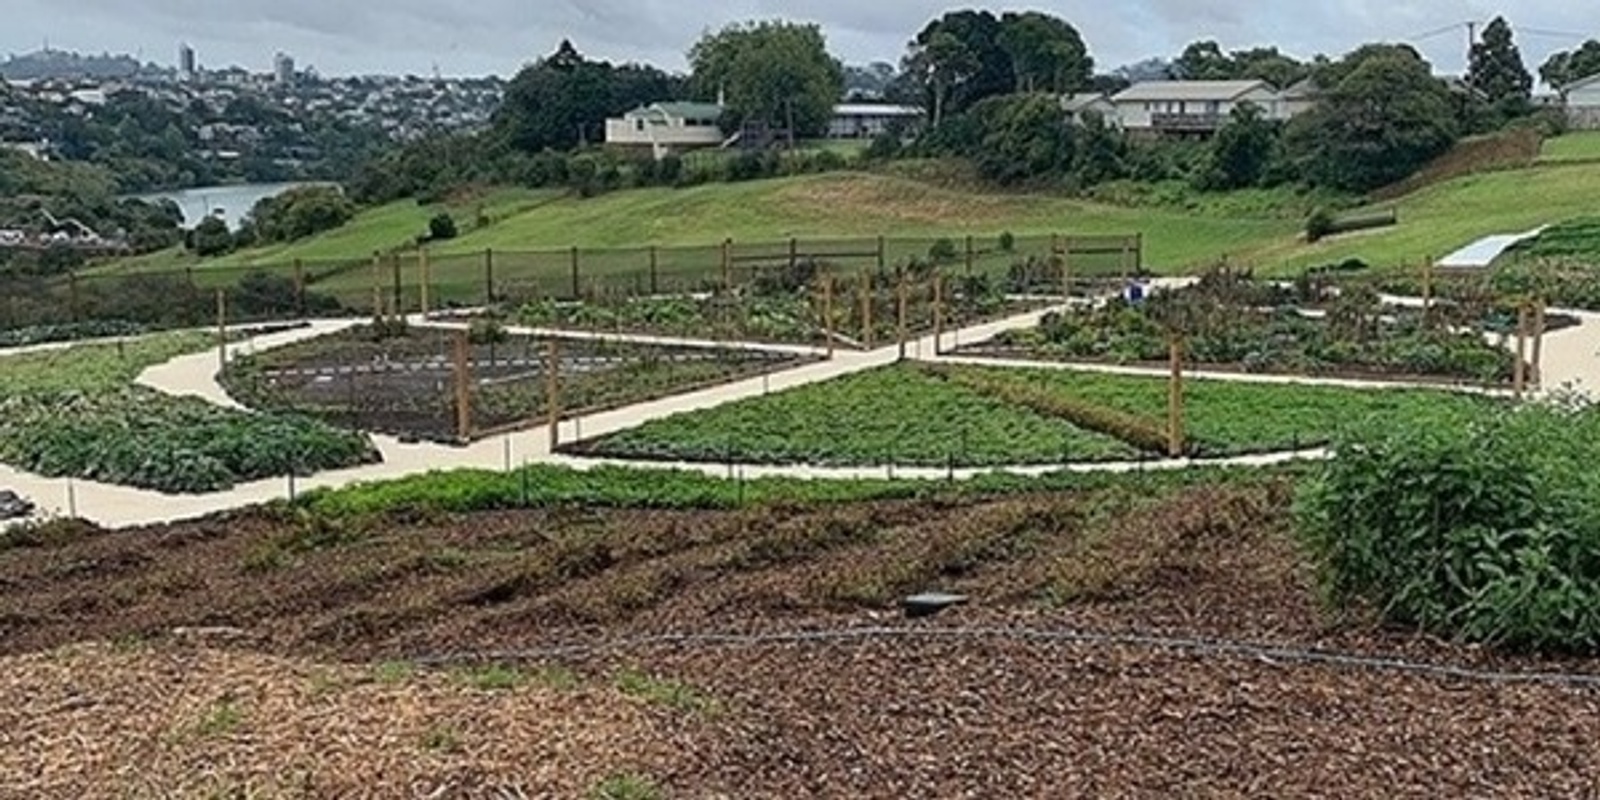 Webinar recording: Gardening according to Māori values and tikanga; Pourewa ethnobotanic garden at Ngāti Whātua Ōrākei - Whai Māia